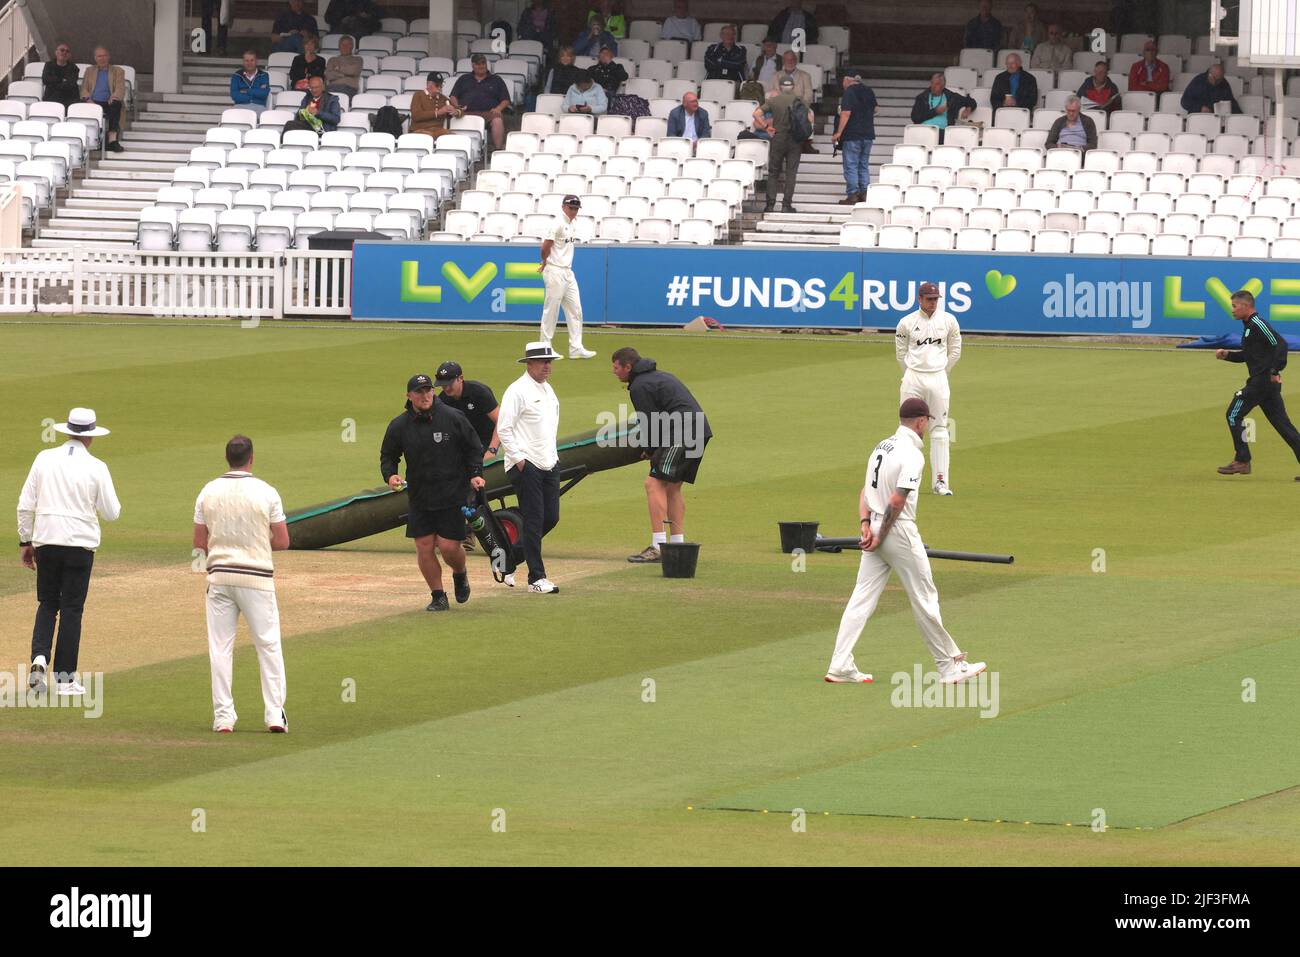 29 juin 2022. Londres, Royaume-Uni. Le personnel au sol se prépare à couvrir le cricket avant qu'une balle ne soit battante alors que la pluie recommence à s'affronter dans le championnat du comté de Surrey au Kia Oval, quatrième jour. David Rowe/Alay Live News Banque D'Images